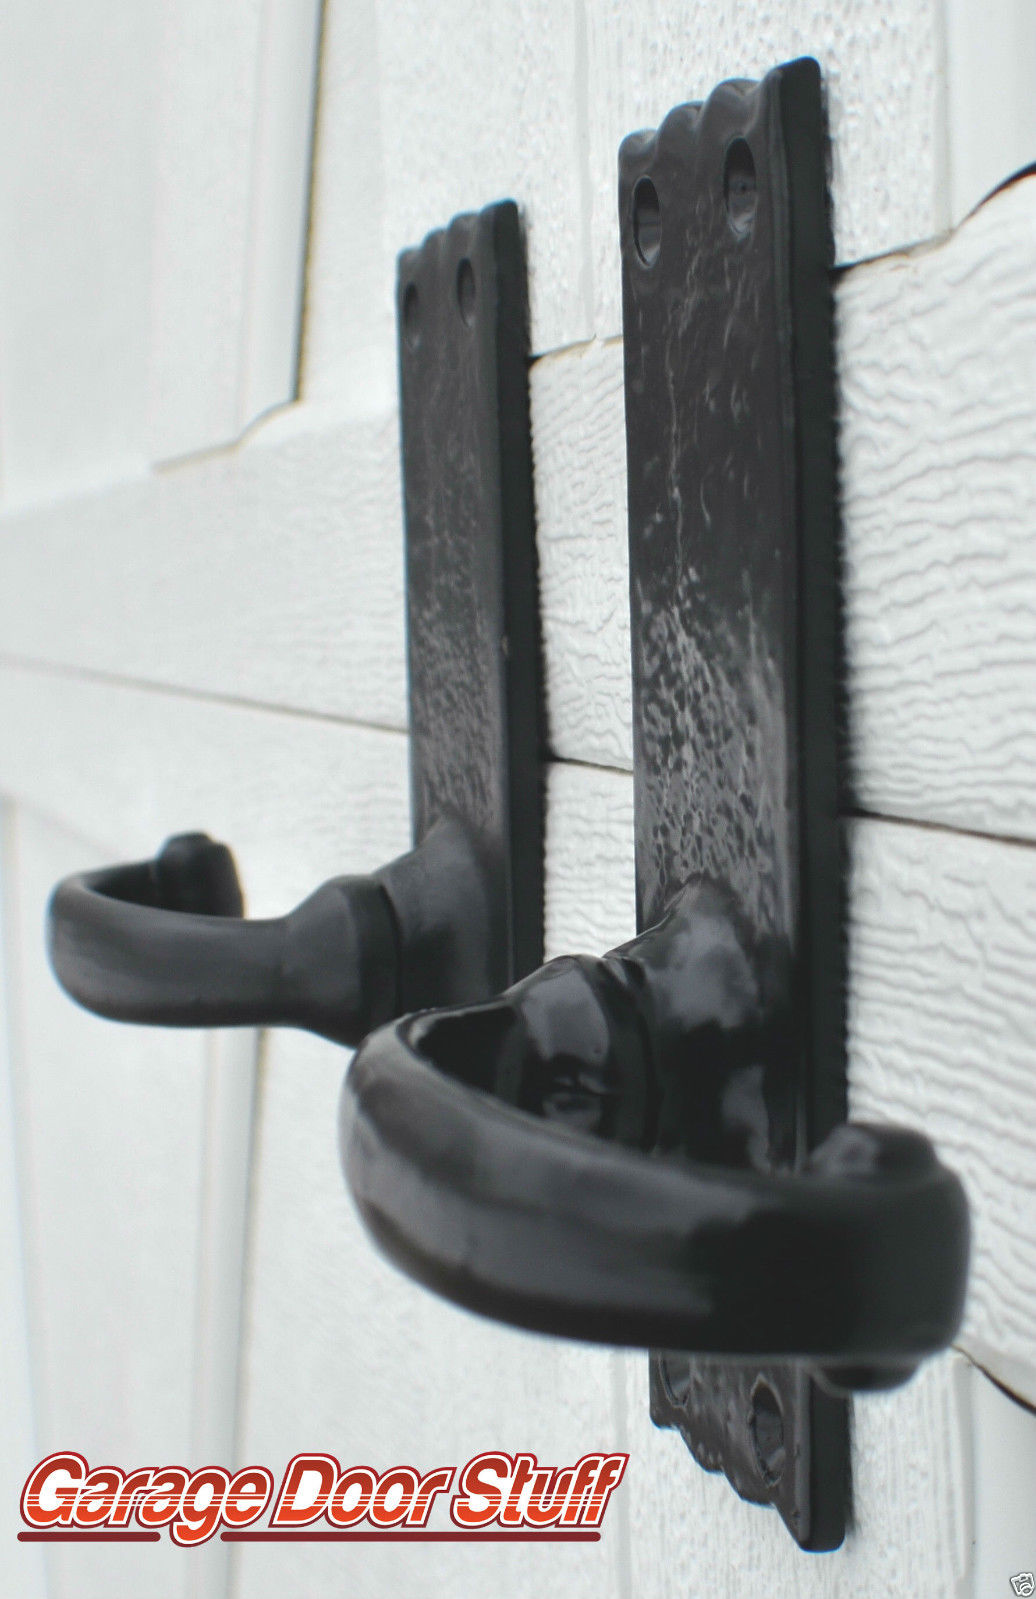 door handles and hardware